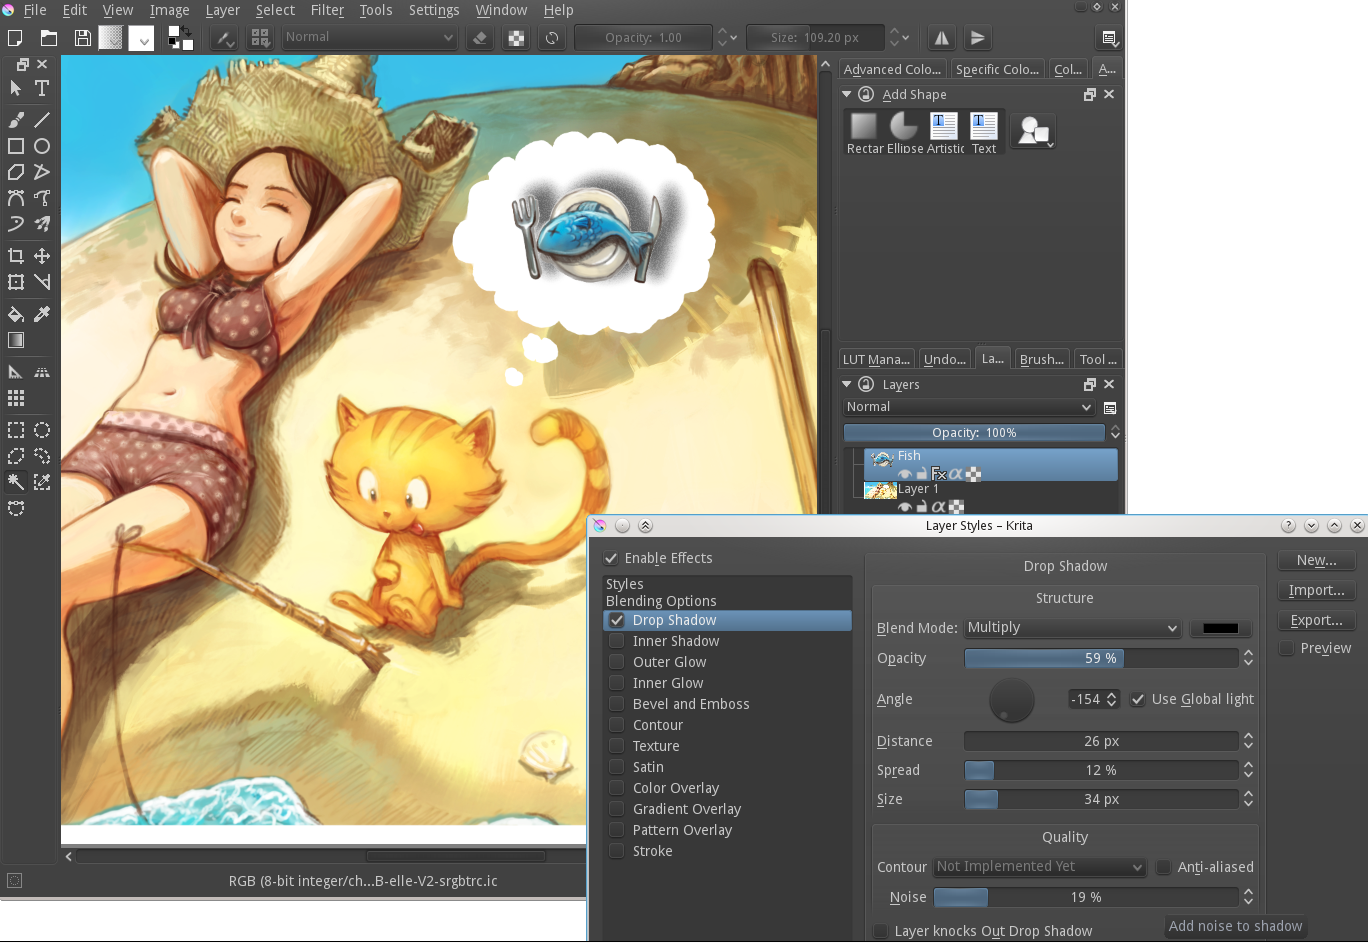 Thông báo phát hành Krita 3.1 - một bản cập nhật chất lượng của phần mềm vẽ Krita, mang đến nhiều tính năng mới và cải thiện hiệu suất vẽ. Hãy xem hình ảnh liên quan để khám phá những tính năng thú vị của Krita 3.1!